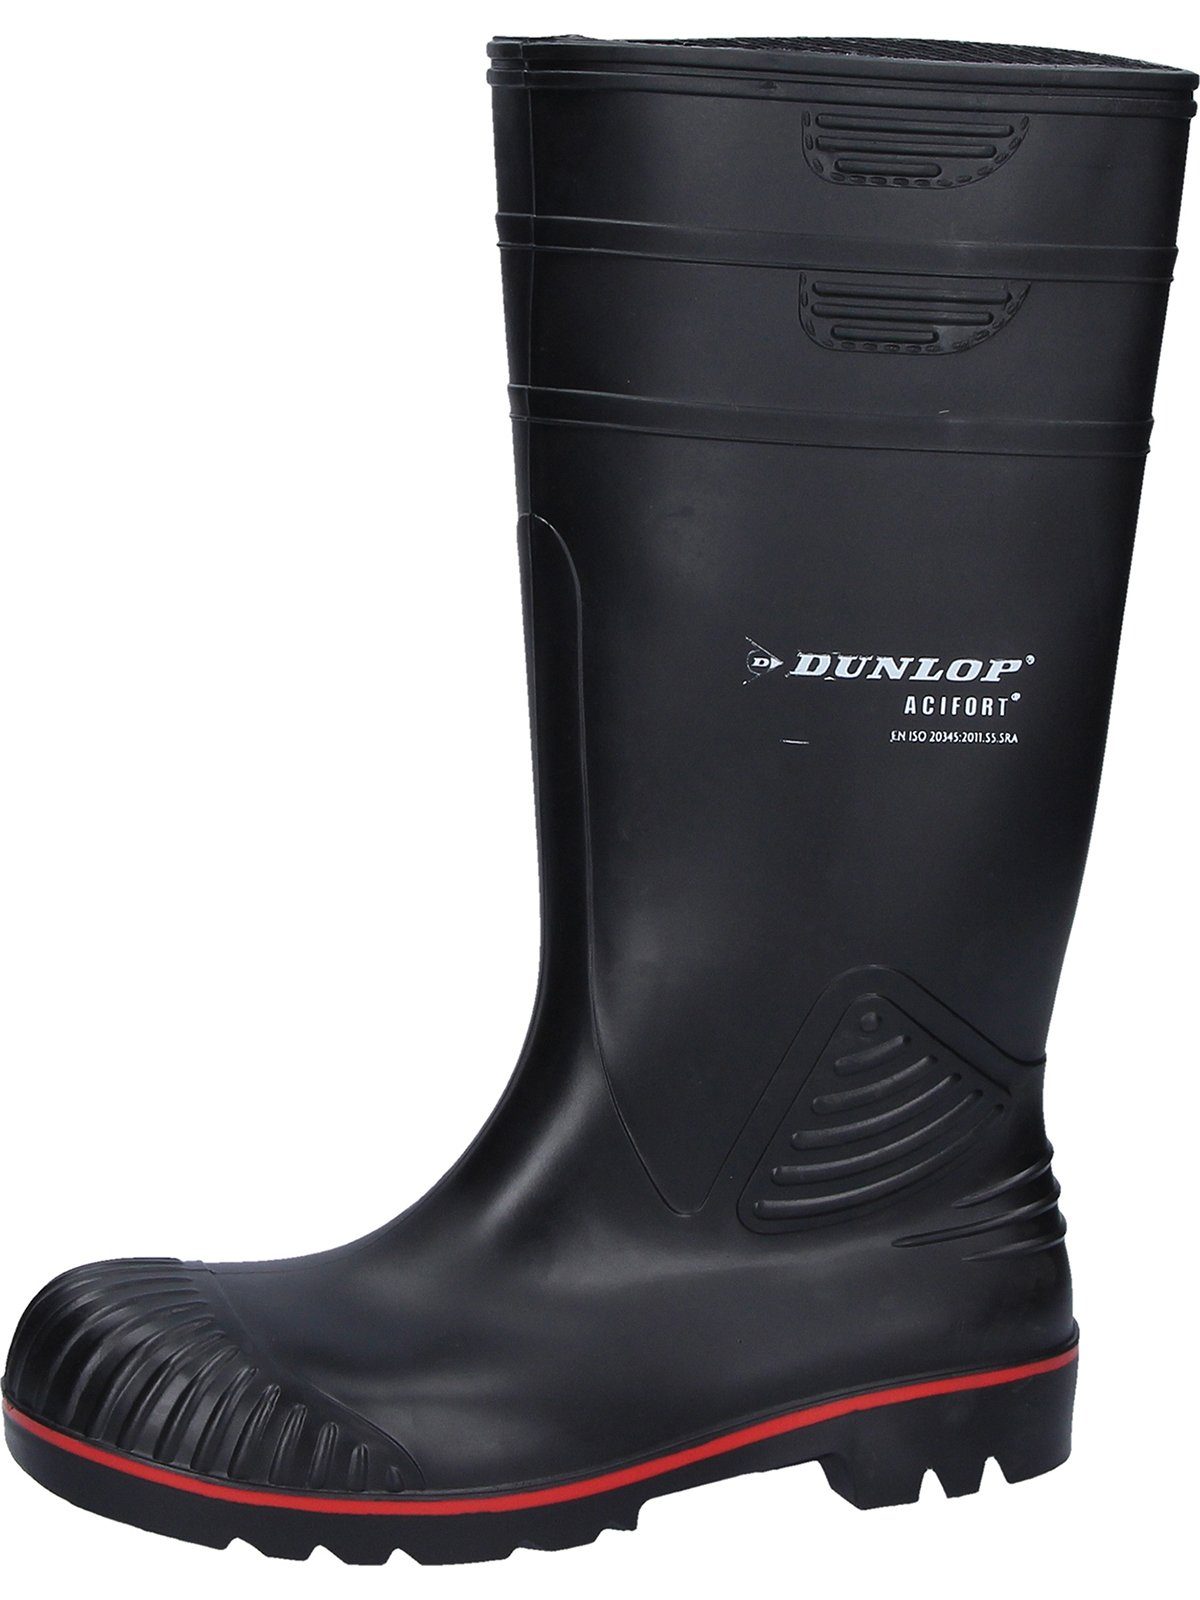 Acifort Stiefel Dunlop_Workwear